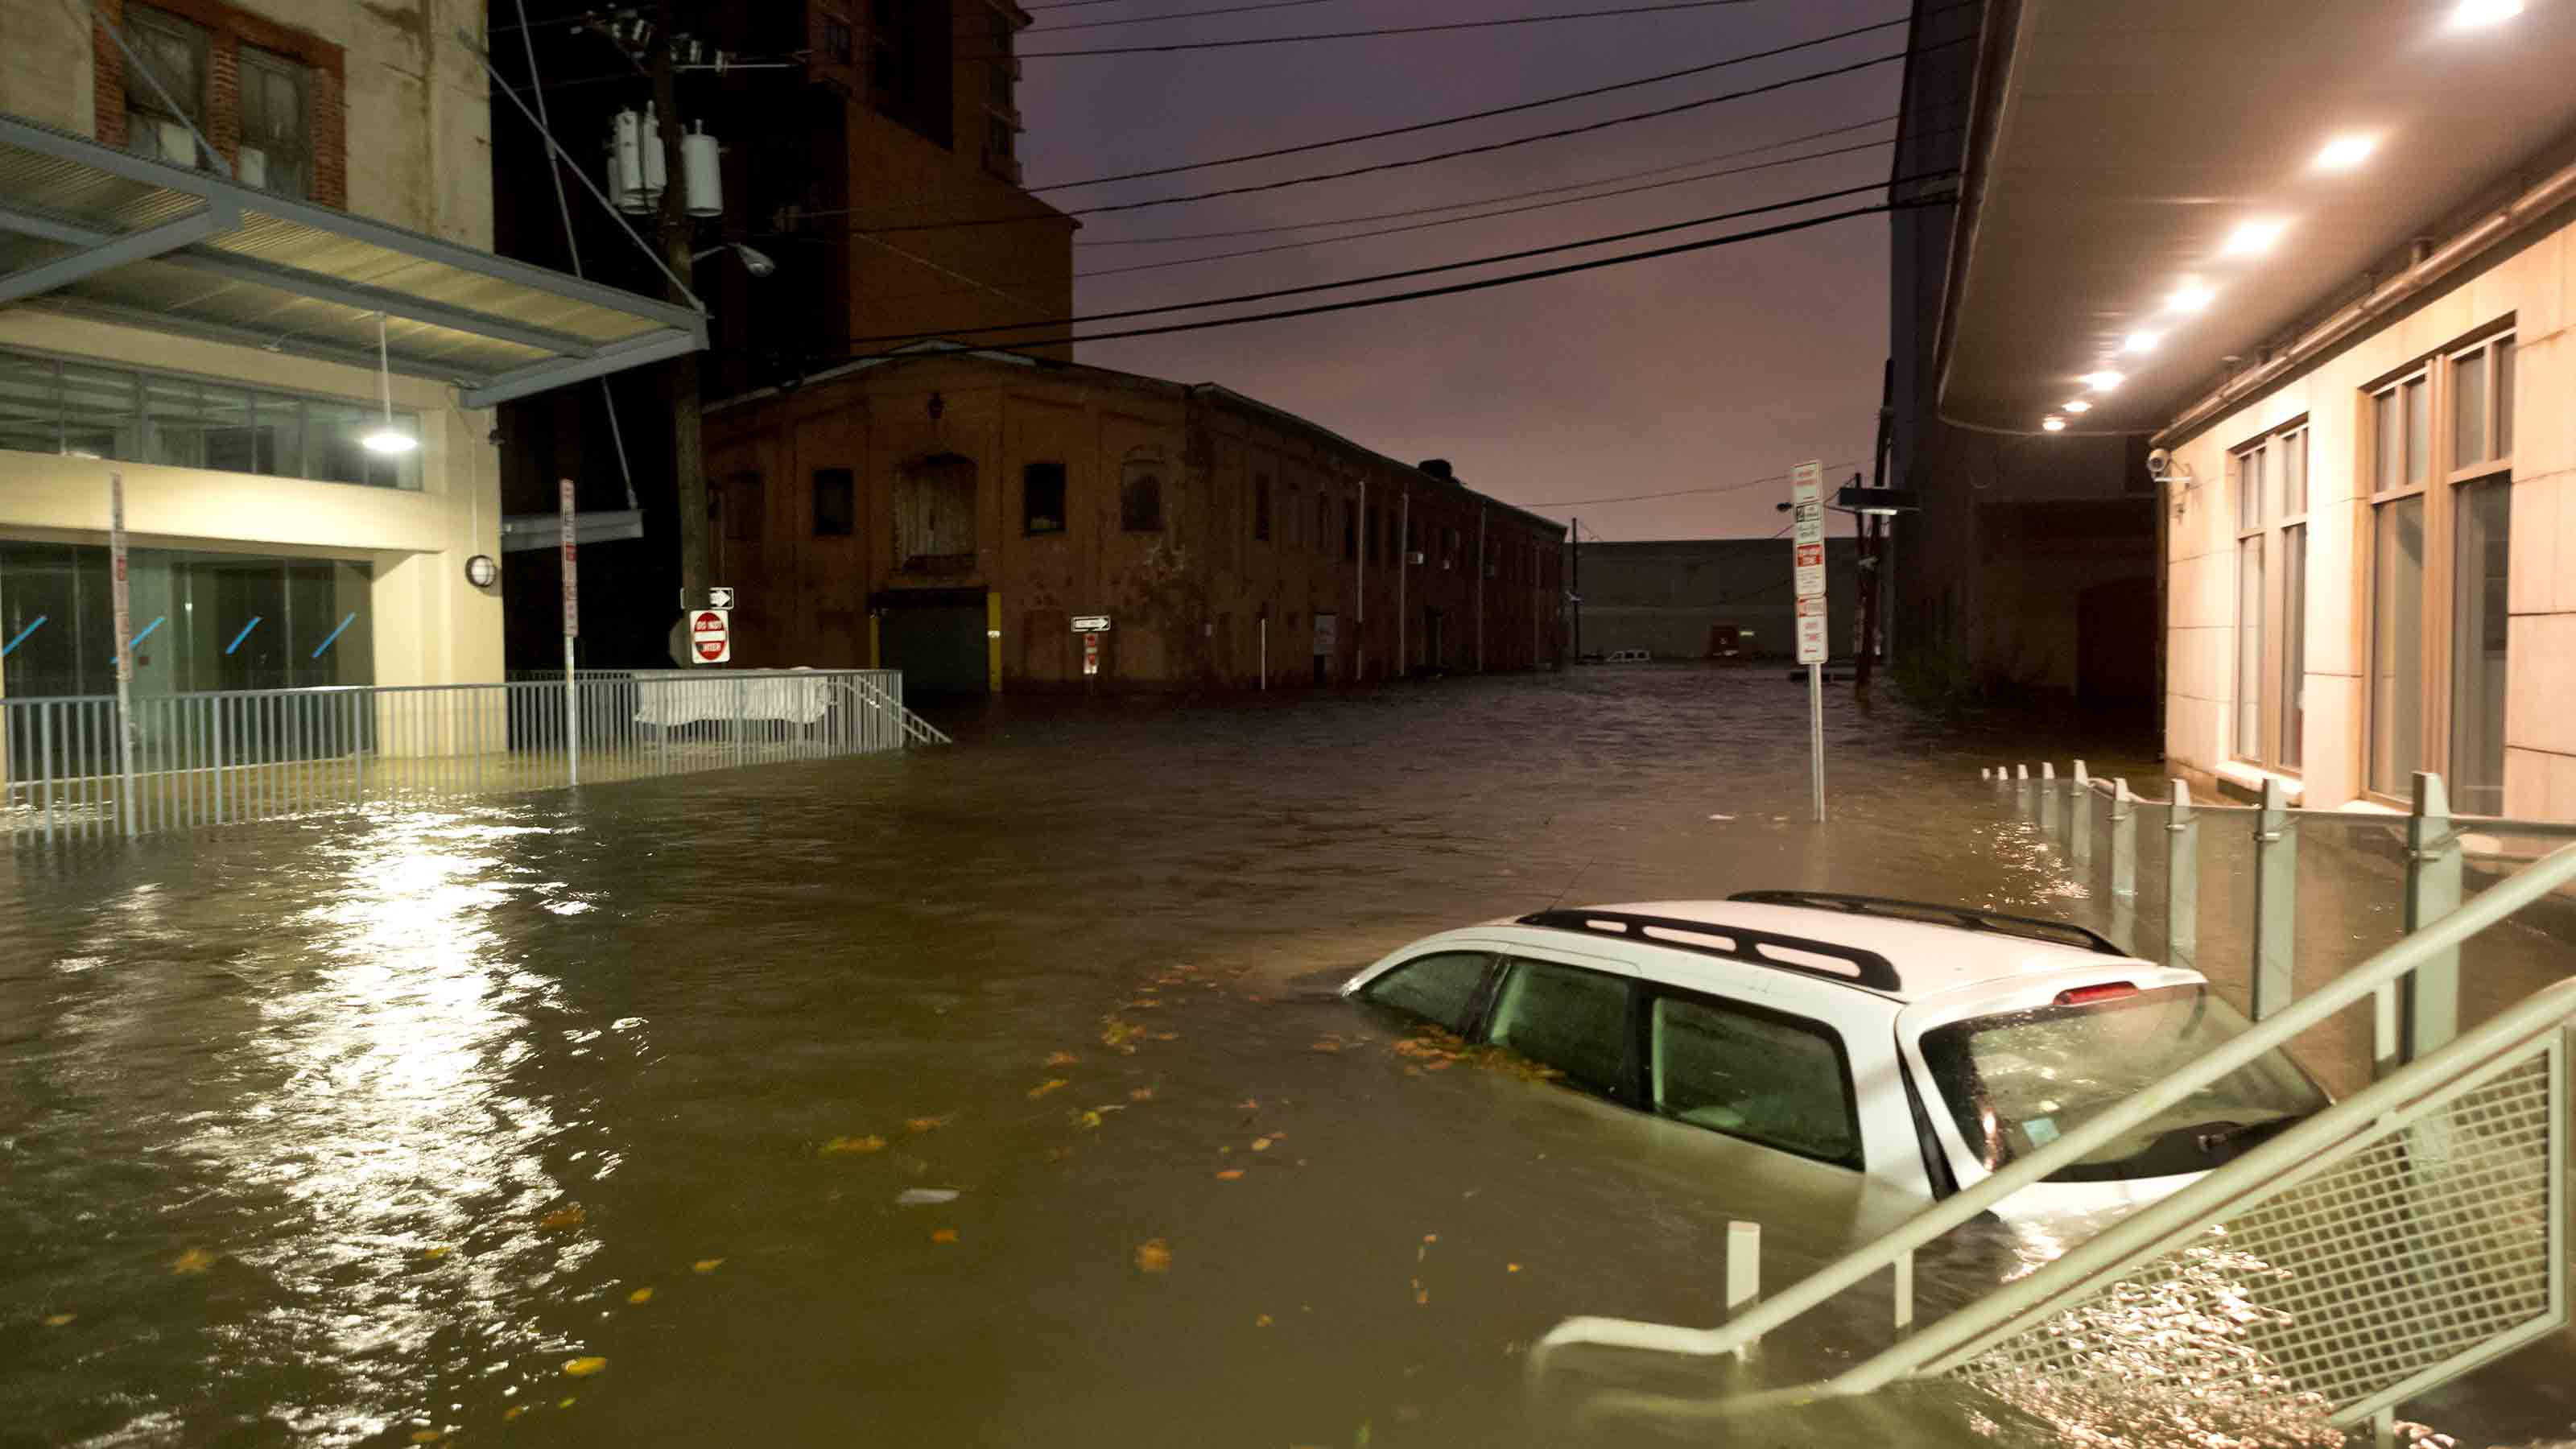 After Storms, Beware of Flooded Cars for Sale | Kiplinger